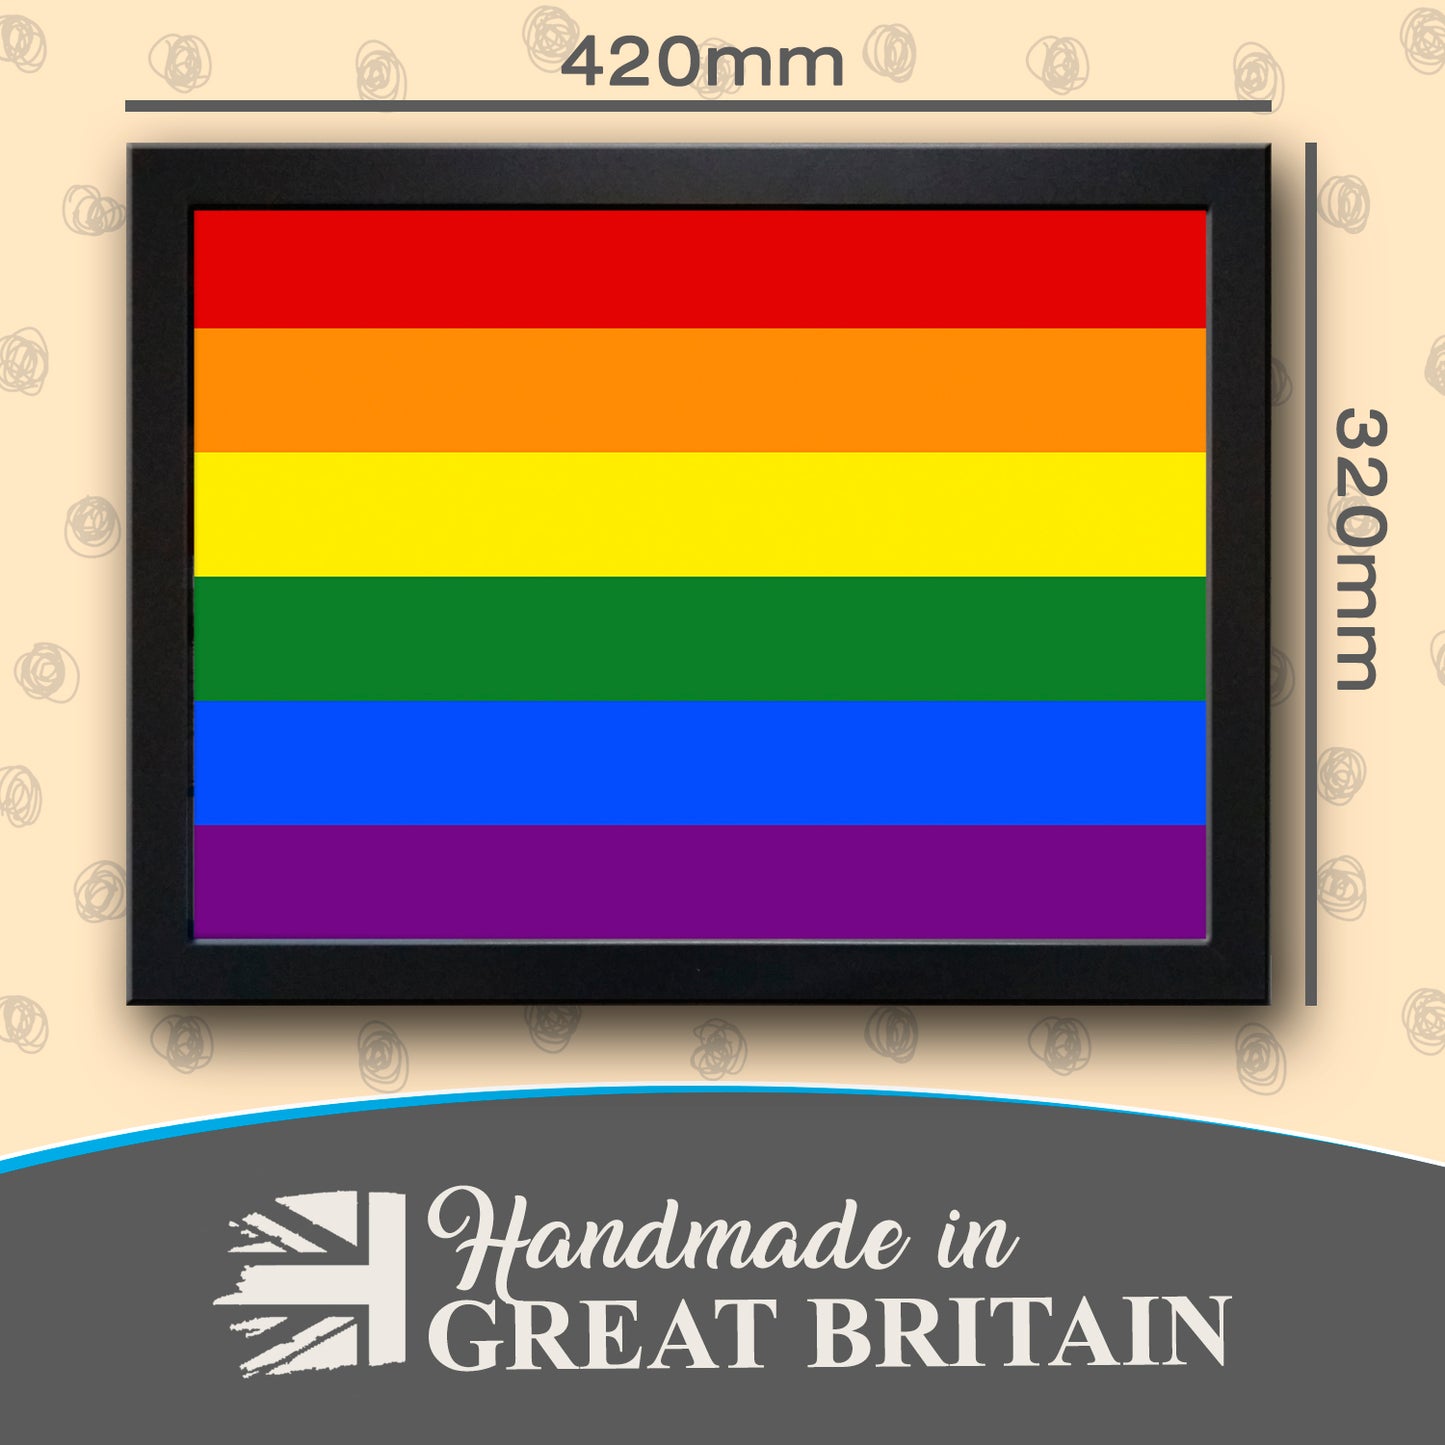 LGBT Rainbow Gay Pride Flag Cushioned Lap Tray